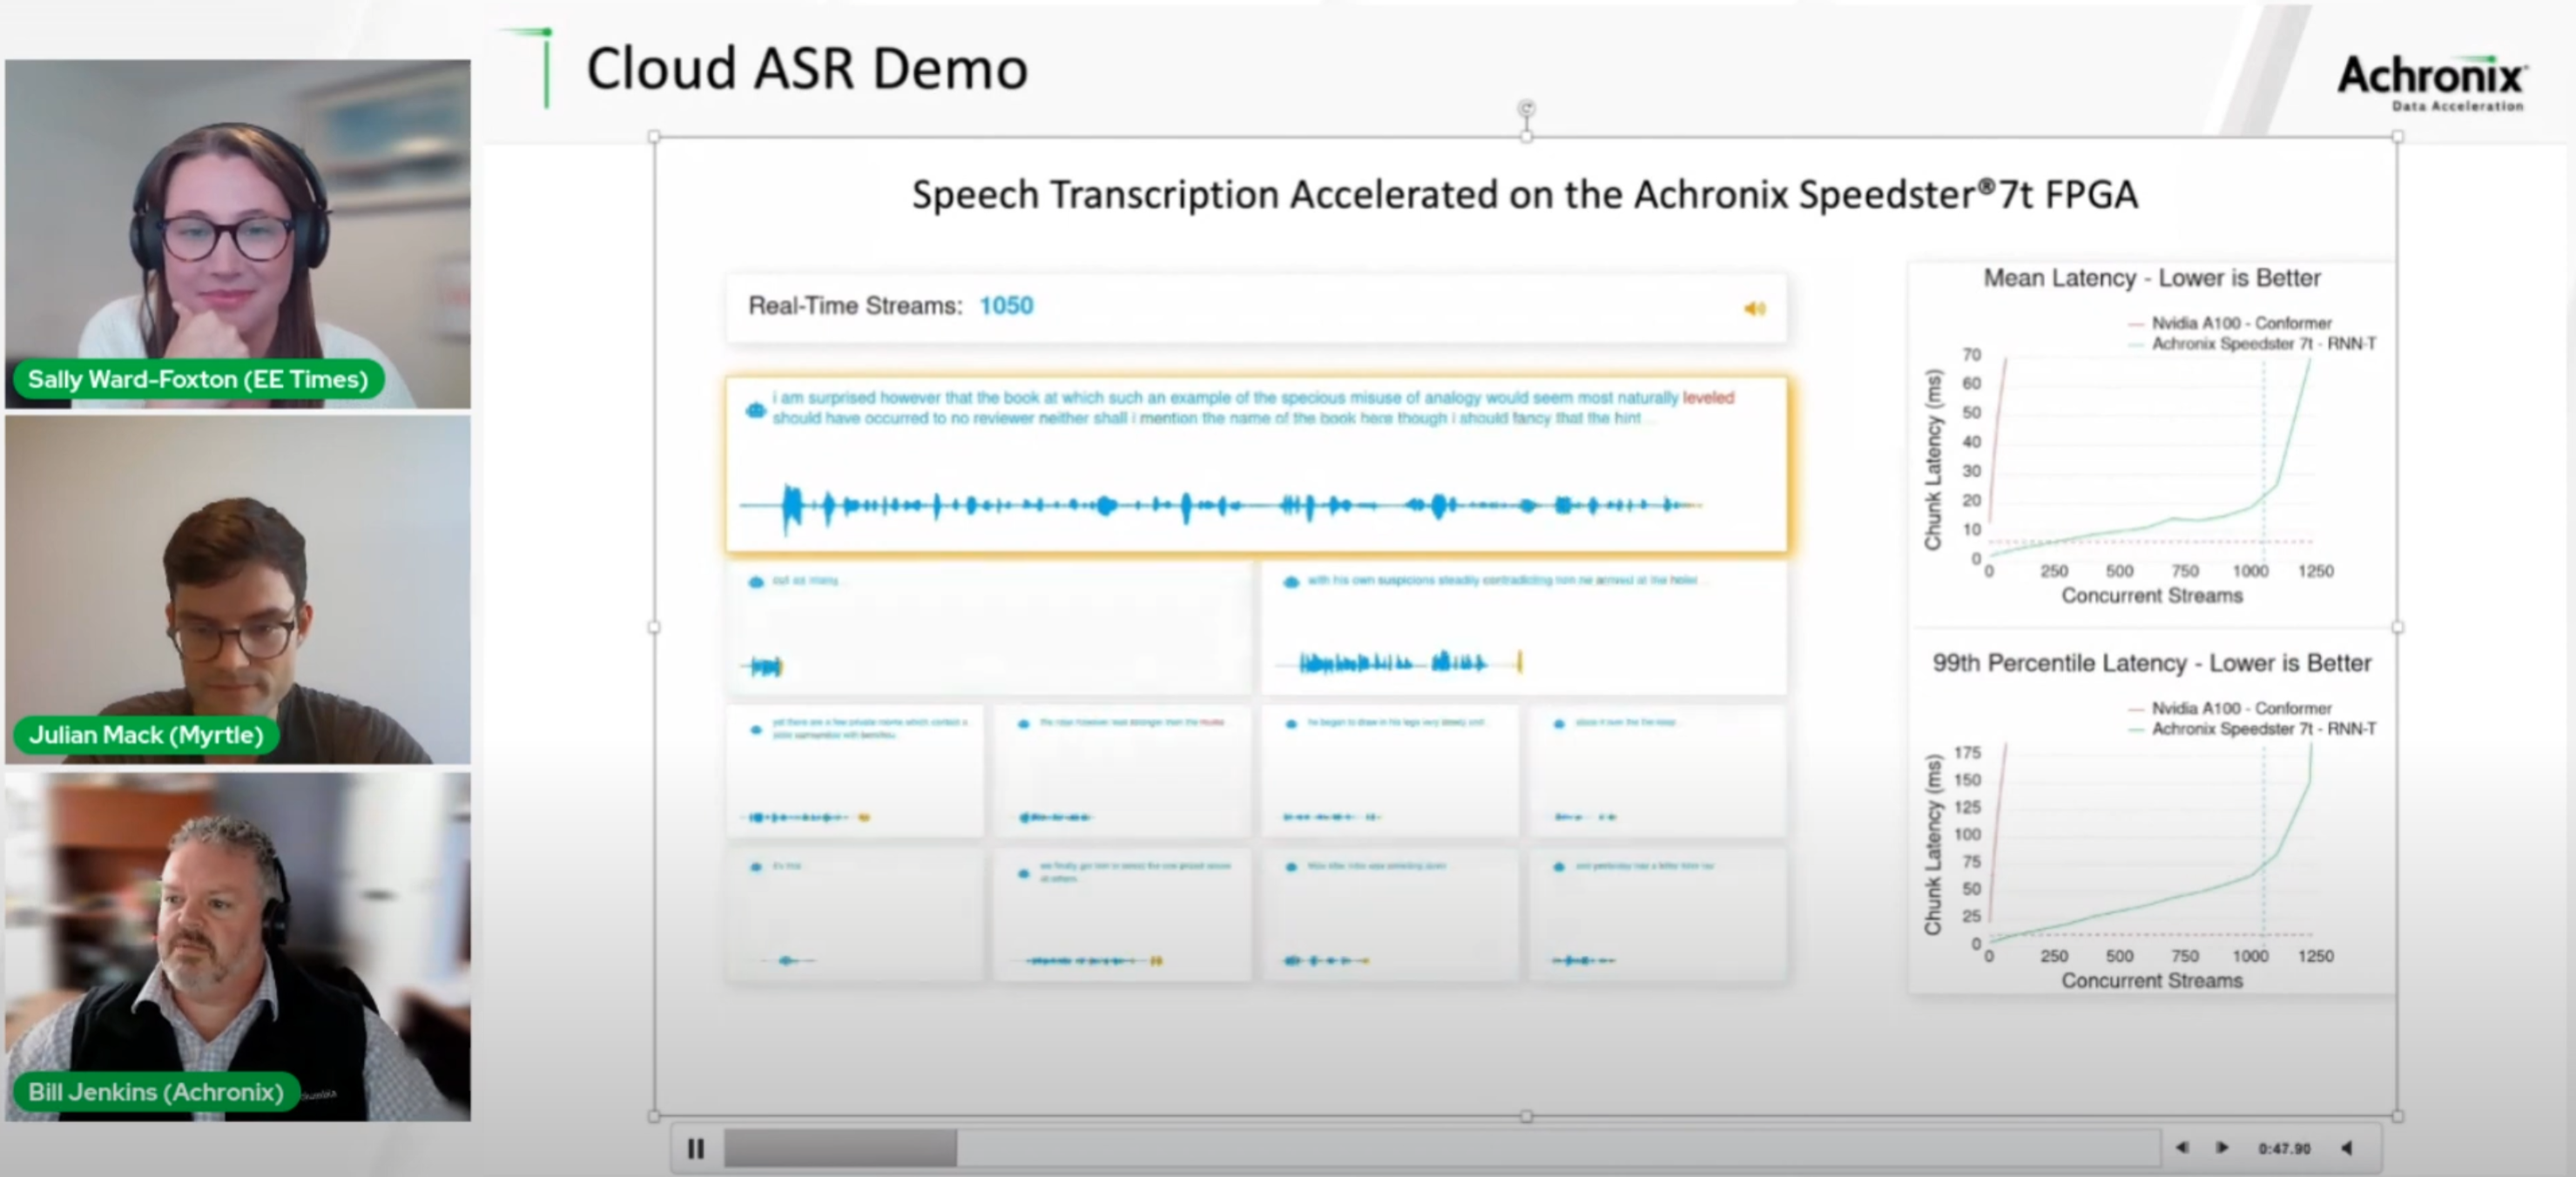 Cloud ASR demo on Speedster 7t FPGA